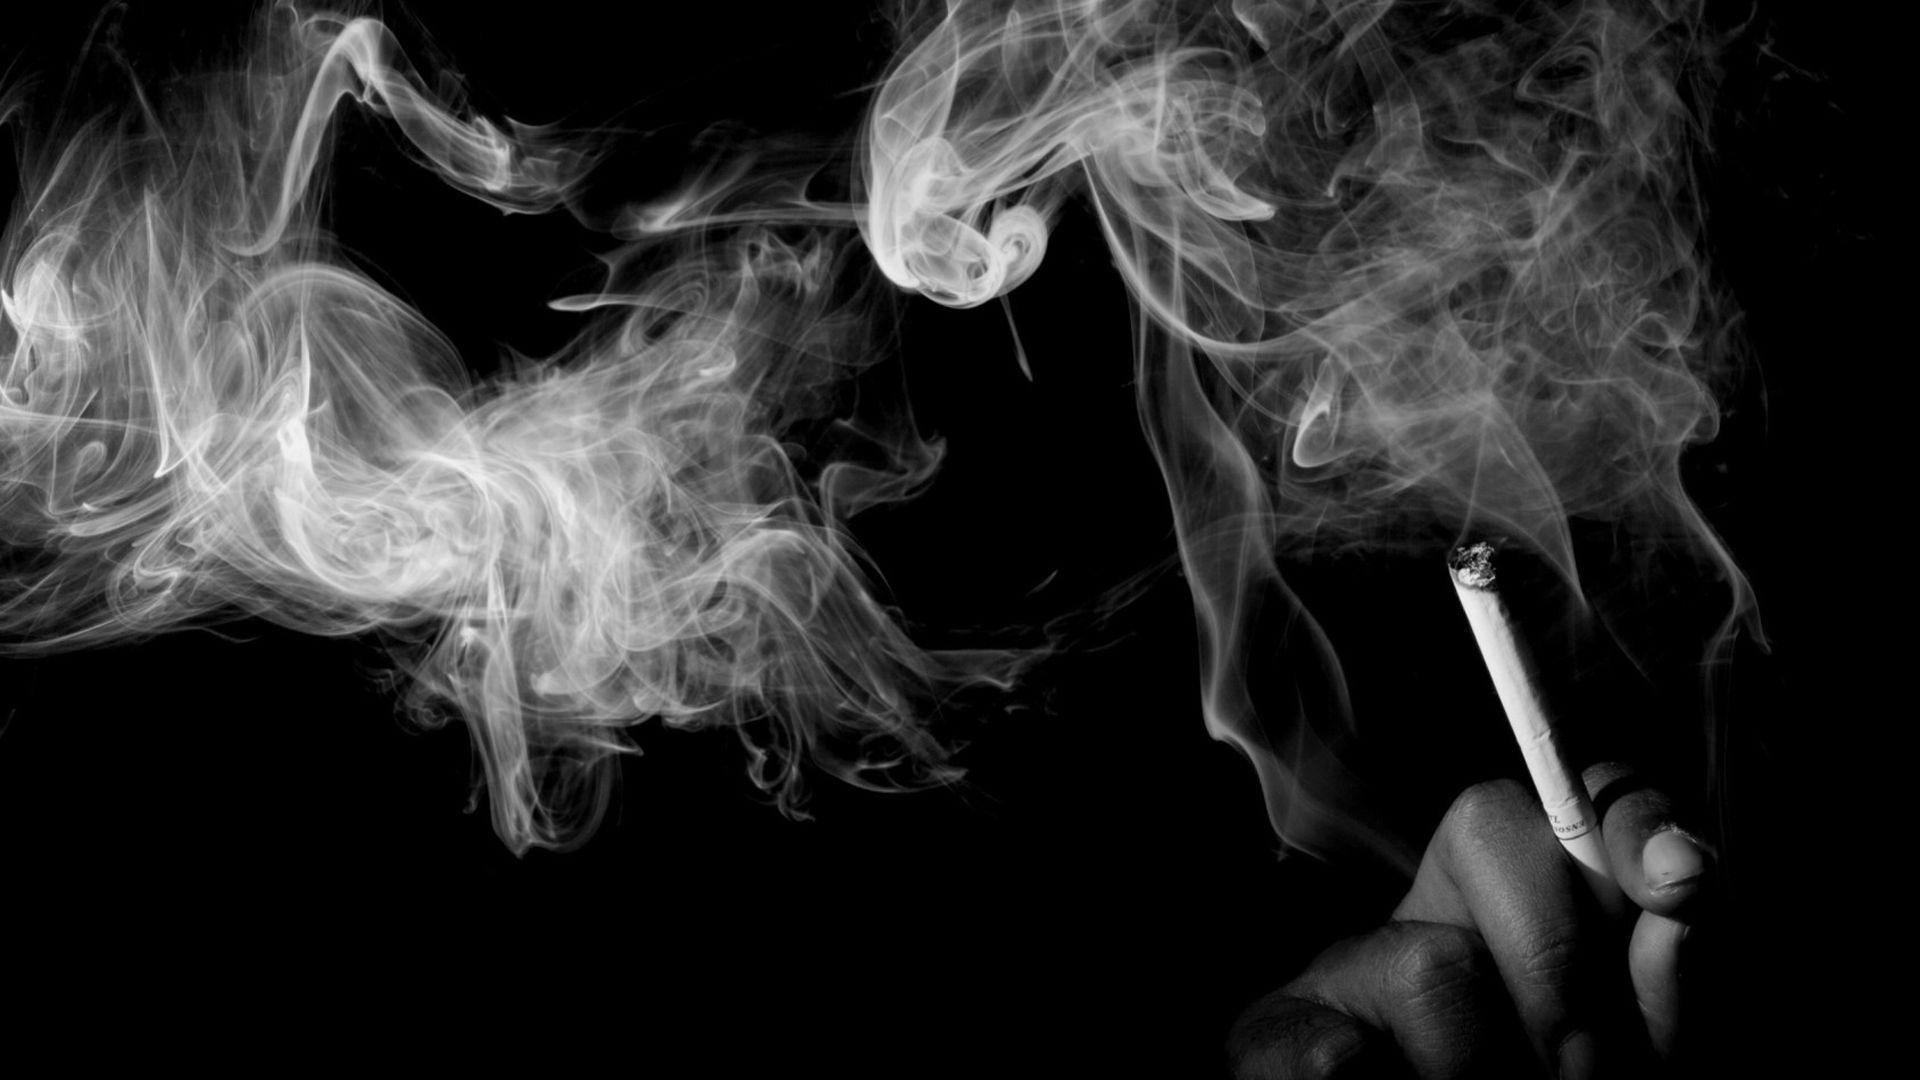 Smoking smoke